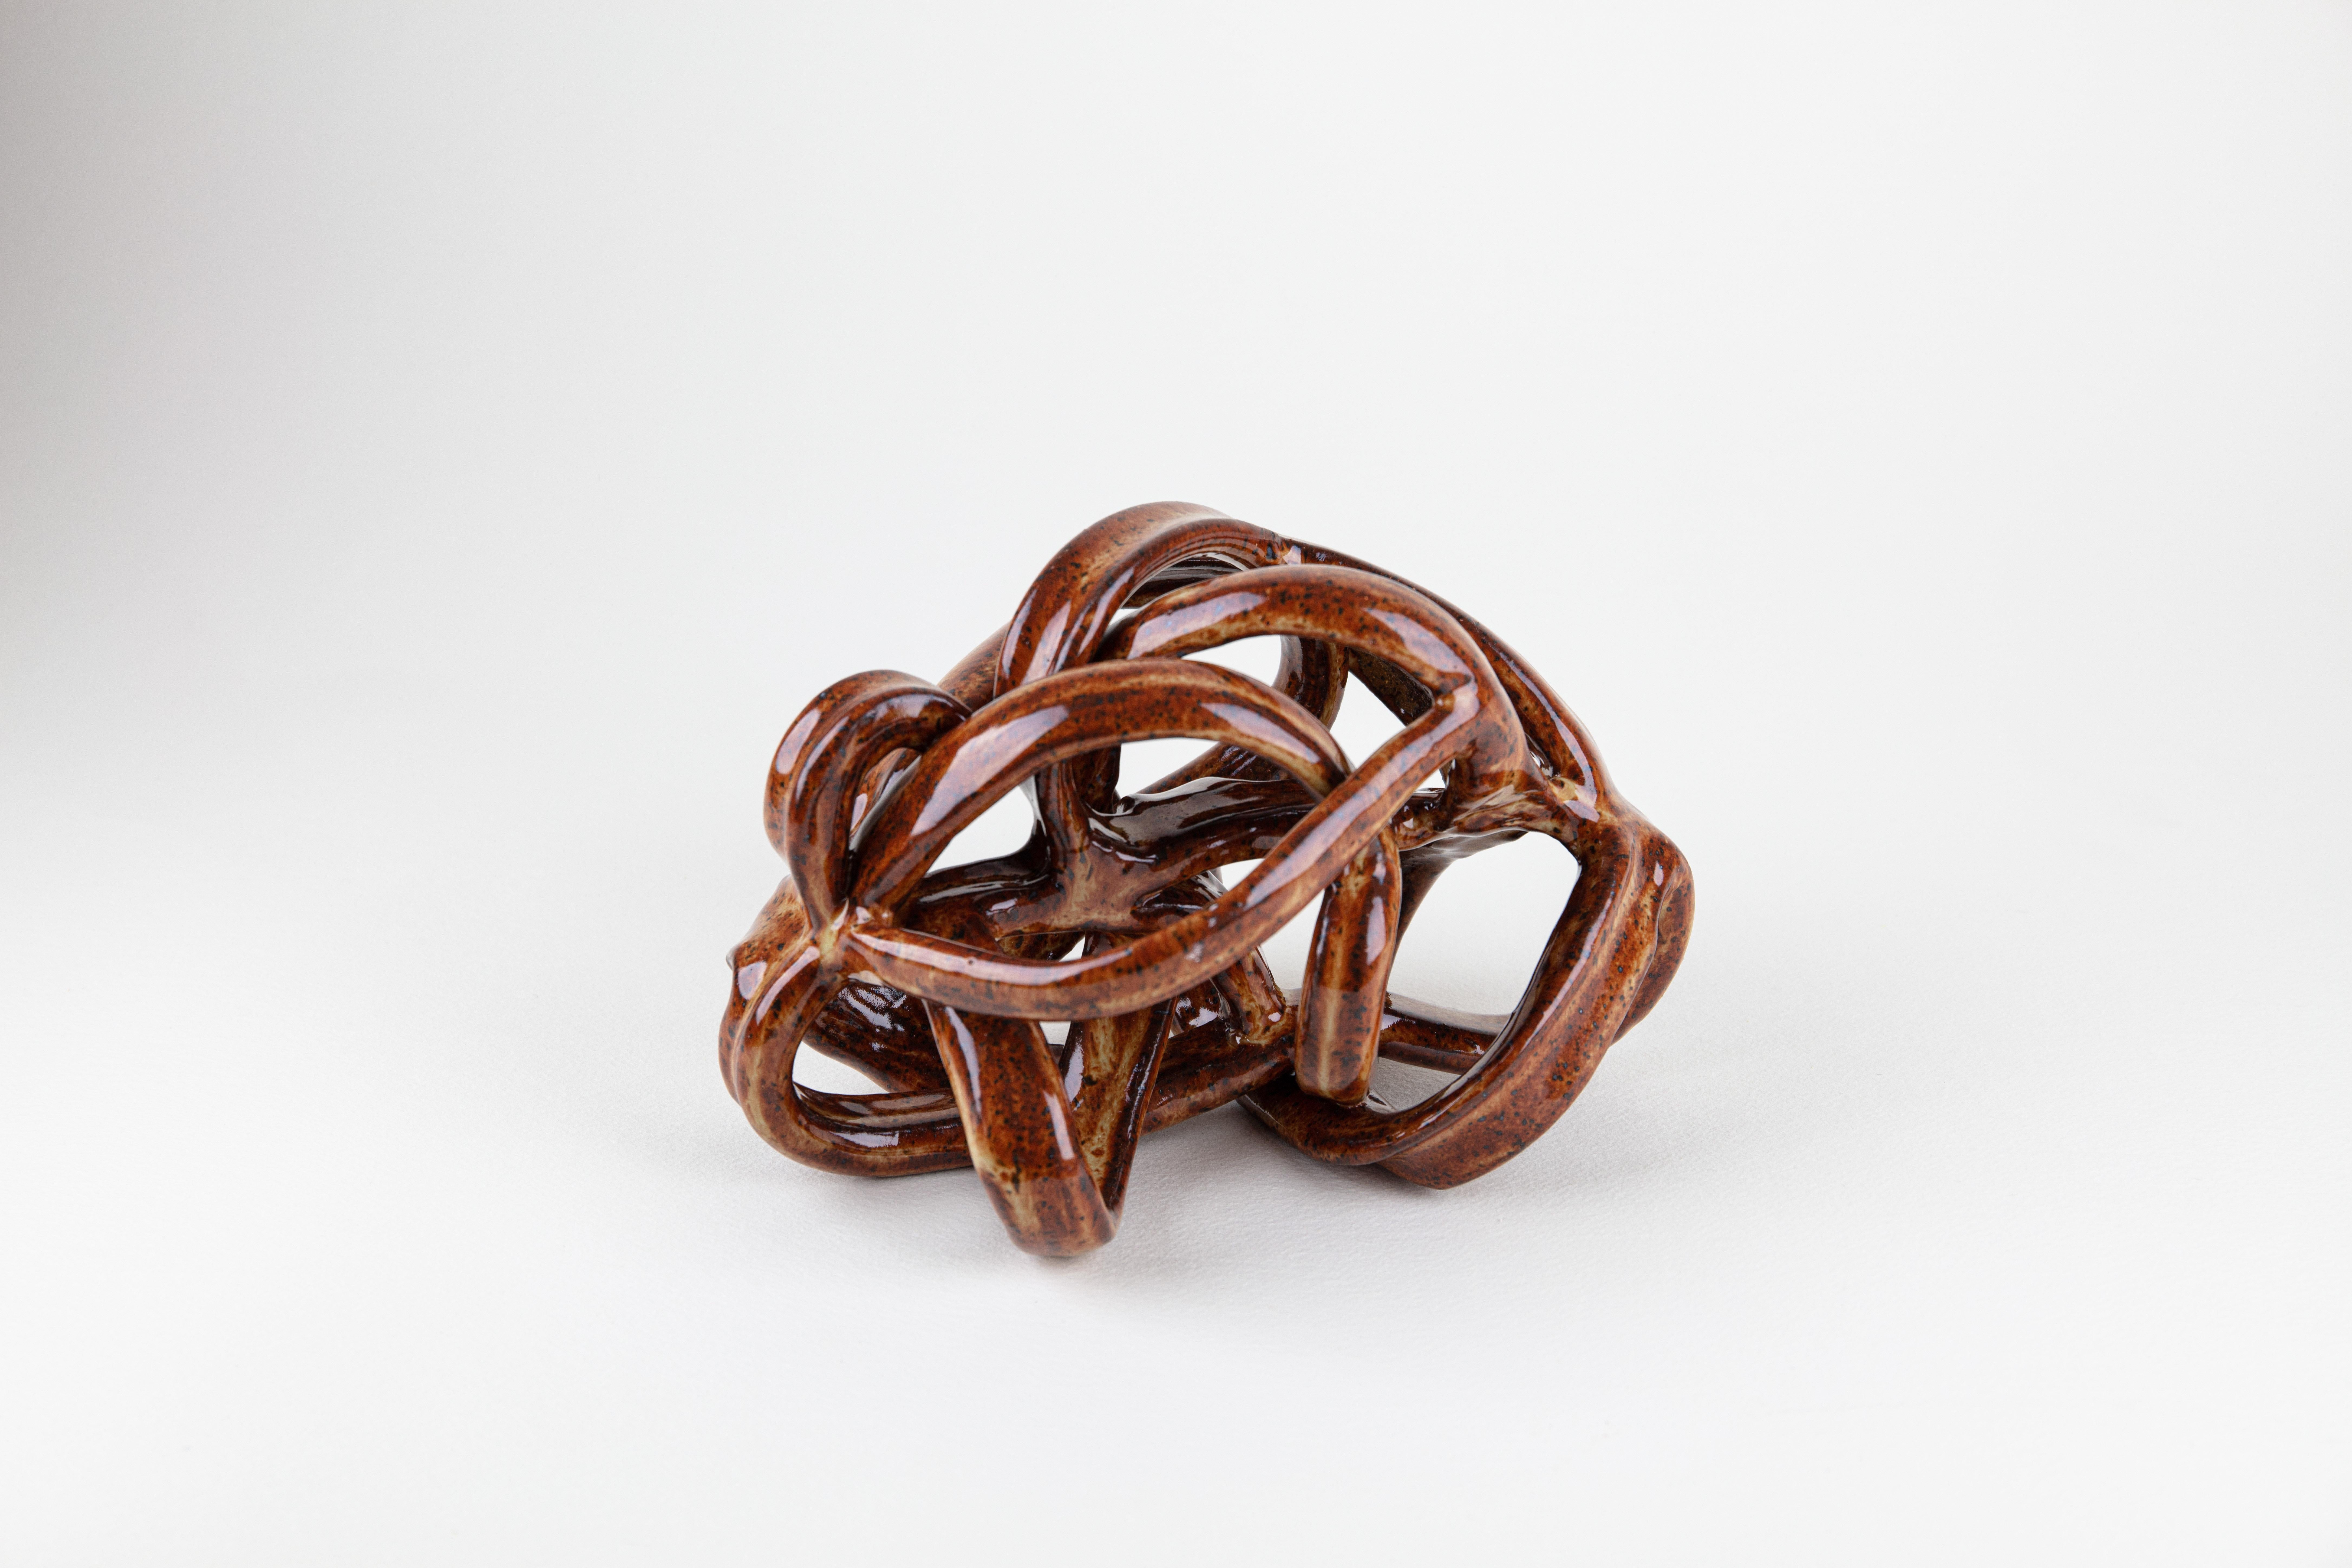 Rachelle Krieger Still-Life Sculpture - Brambles 1, Abstract ceramic sculpture, brown